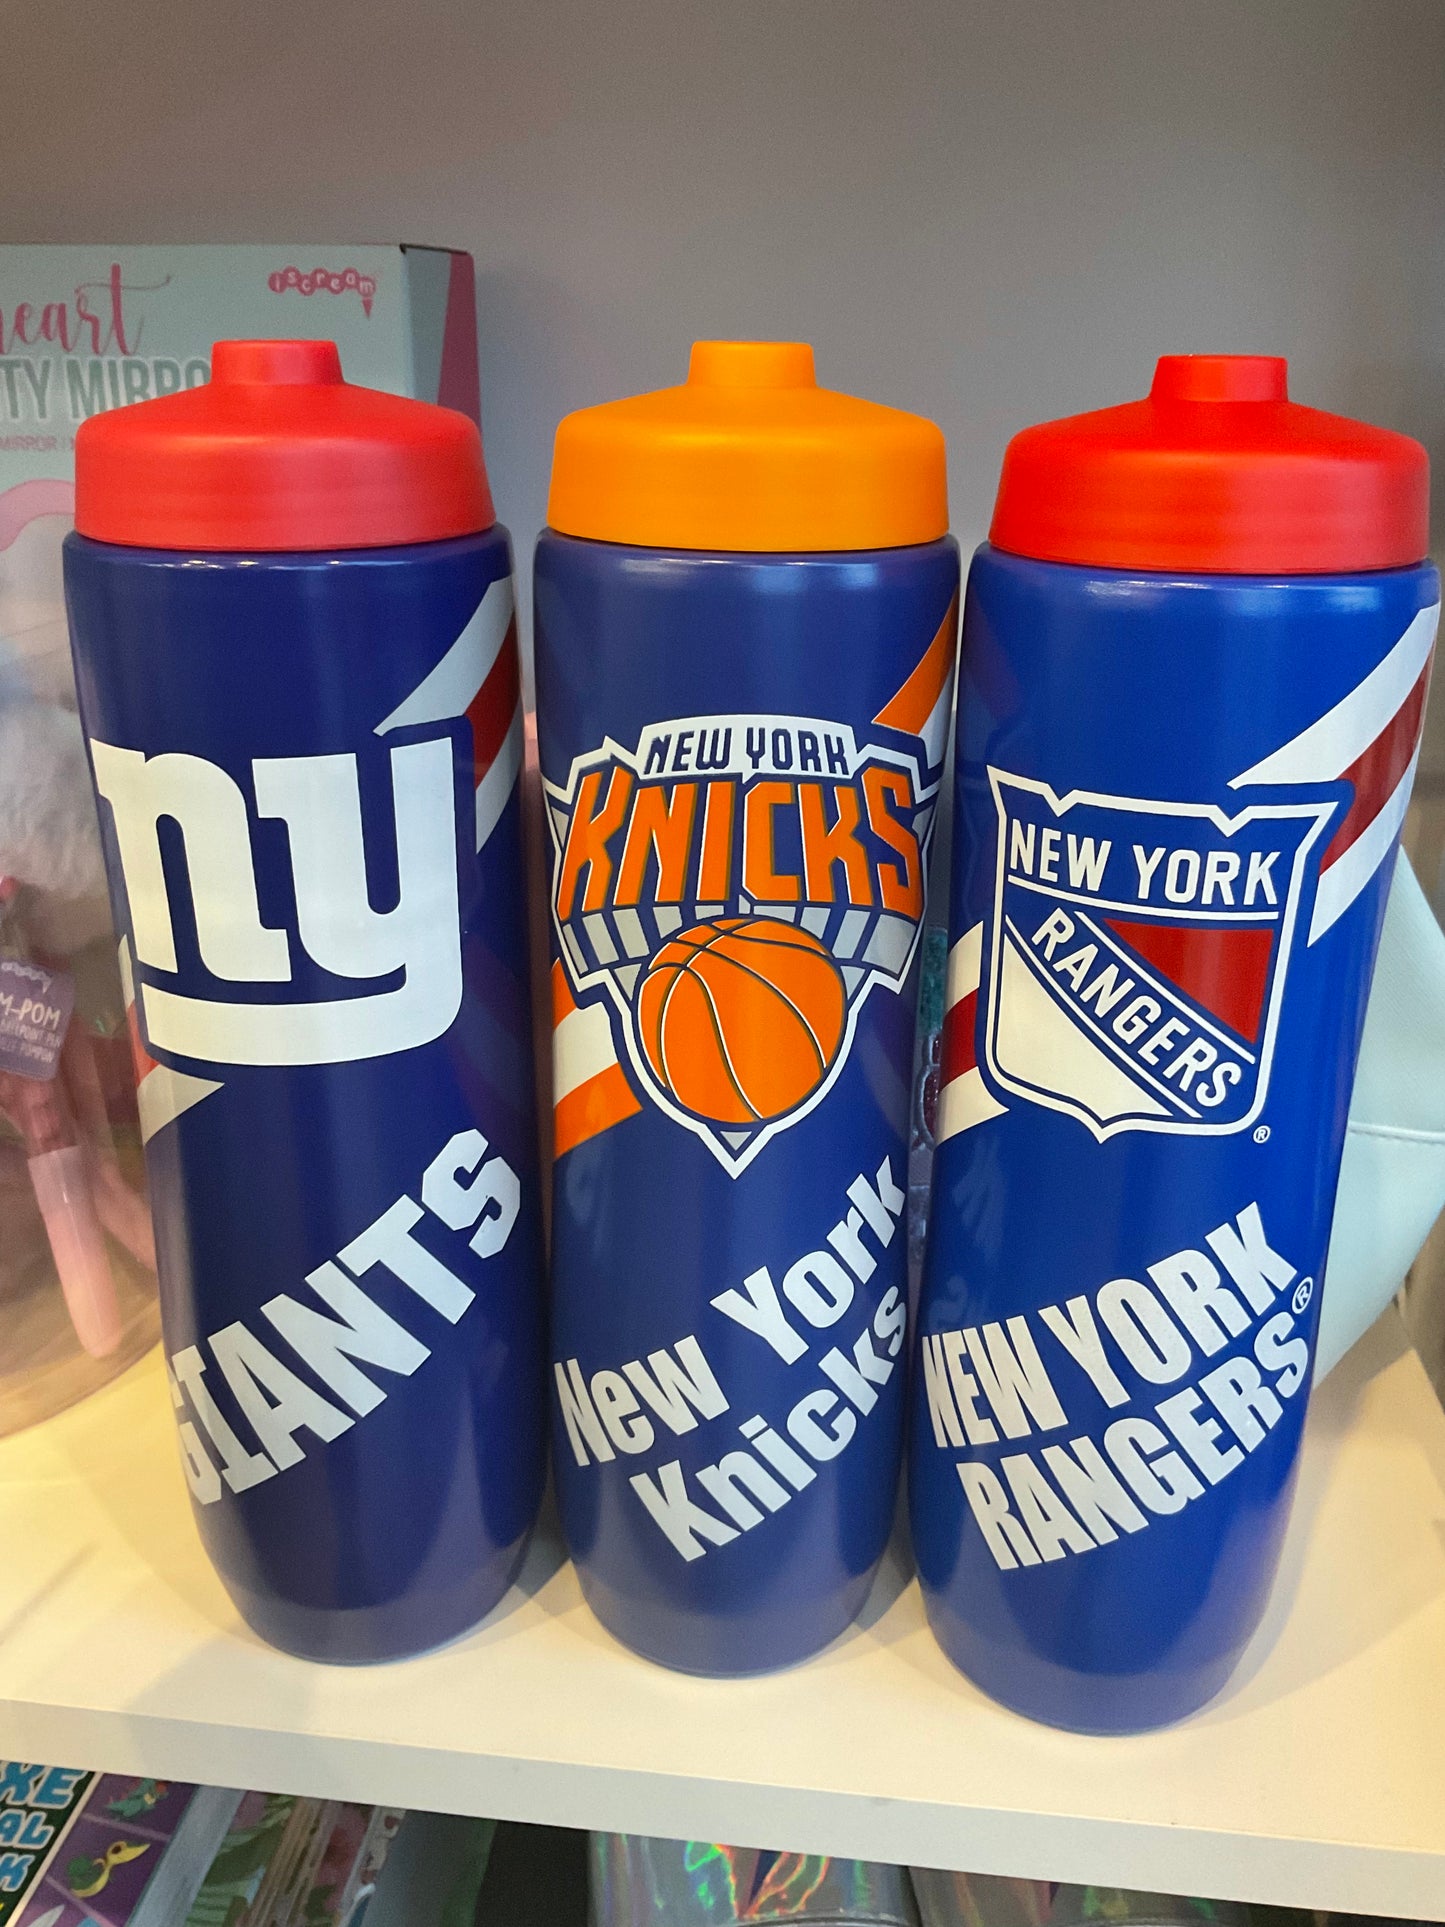 New York water bottles